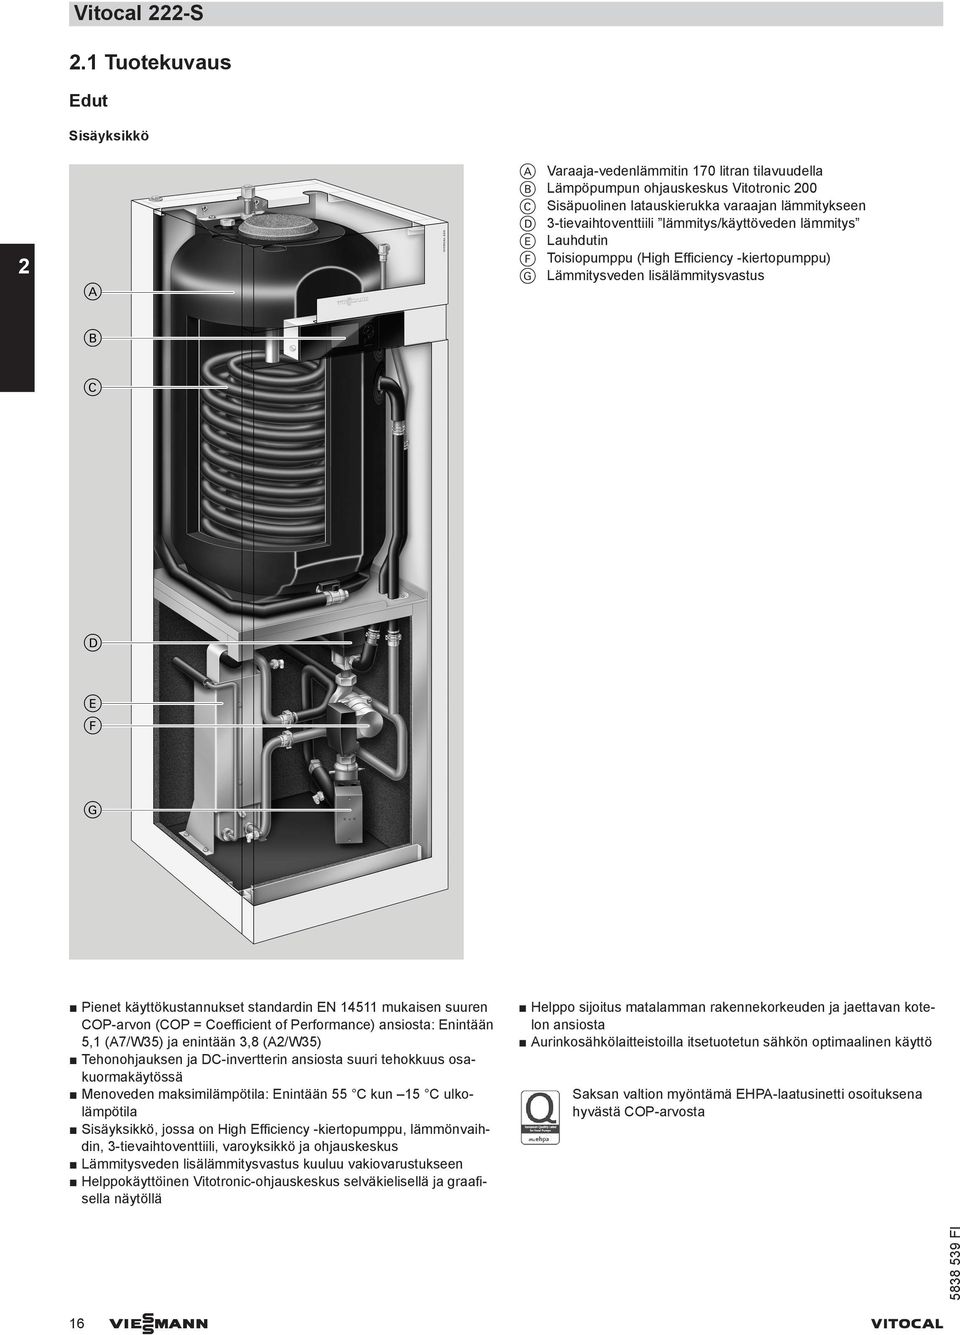 lämmitys/käyttöveden lämmitys E Lauhdutin F Toisiopumppu (High Efficiency -kiertopumppu) G Lämmitysveden lisälämmitysvastus Pienet käyttökustannukset standardin EN 14511 mukaisen suuren COP-arvon